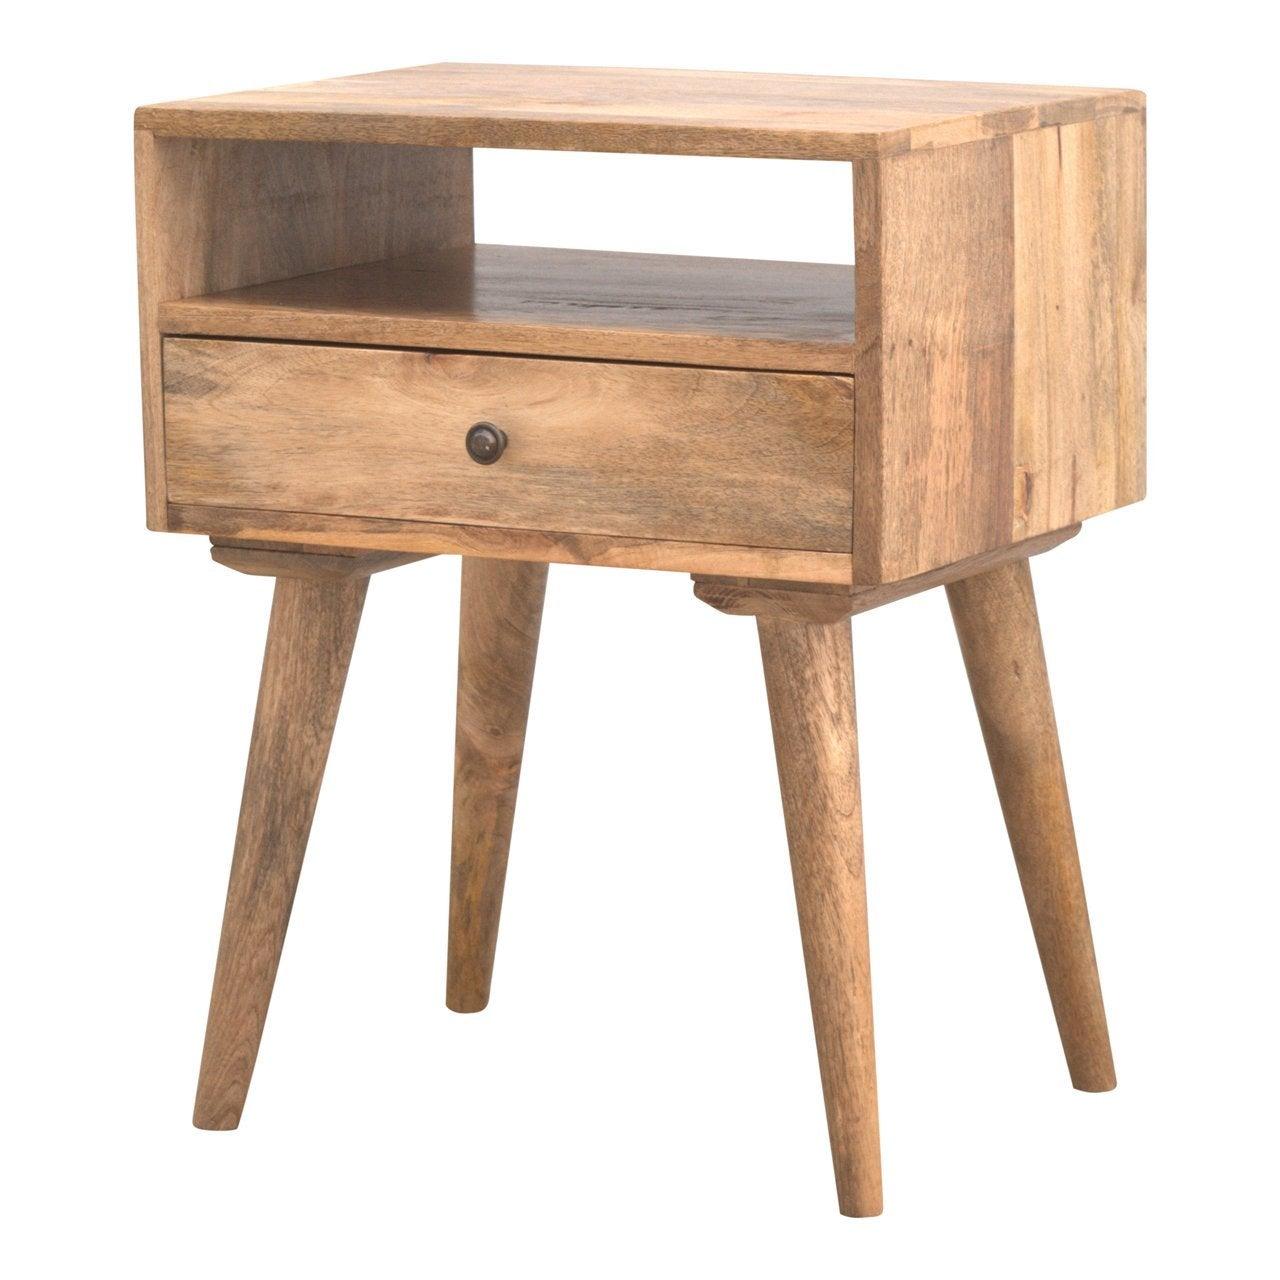 Modern solid wood bedside table with open slot - crimblefest furniture - image 5